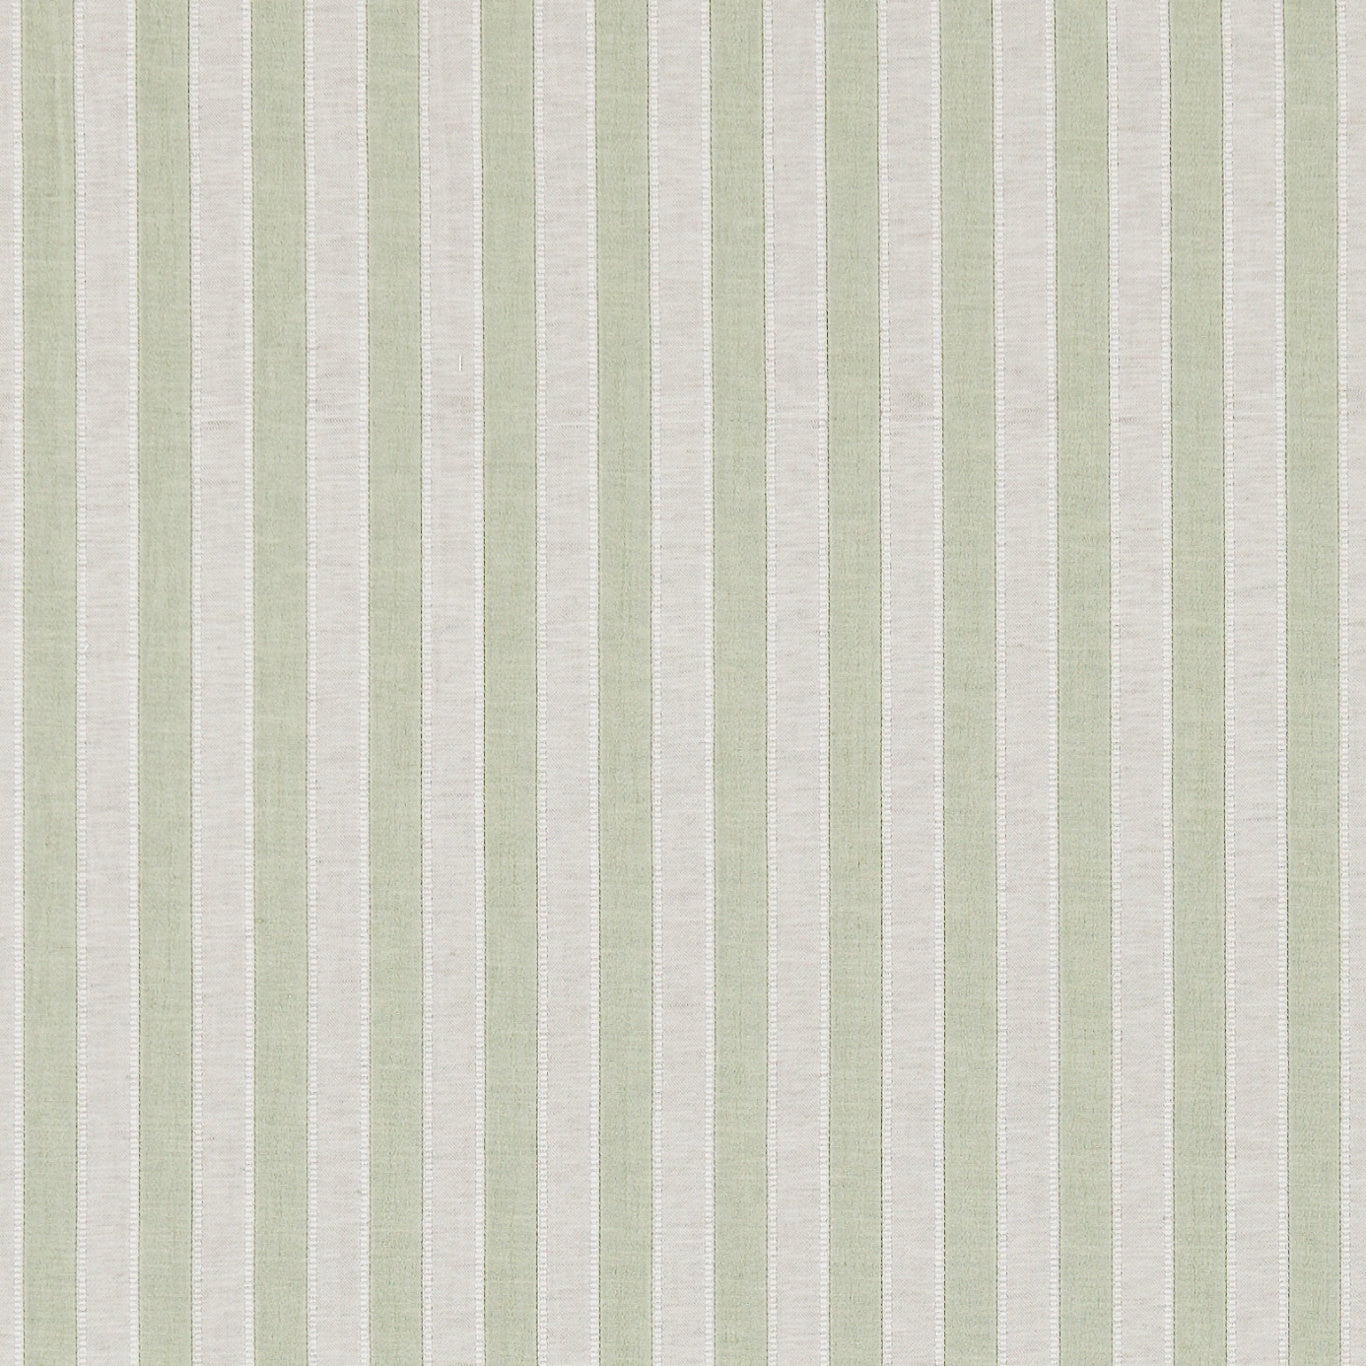 Sorilla Stripe Fabric by Sanderson